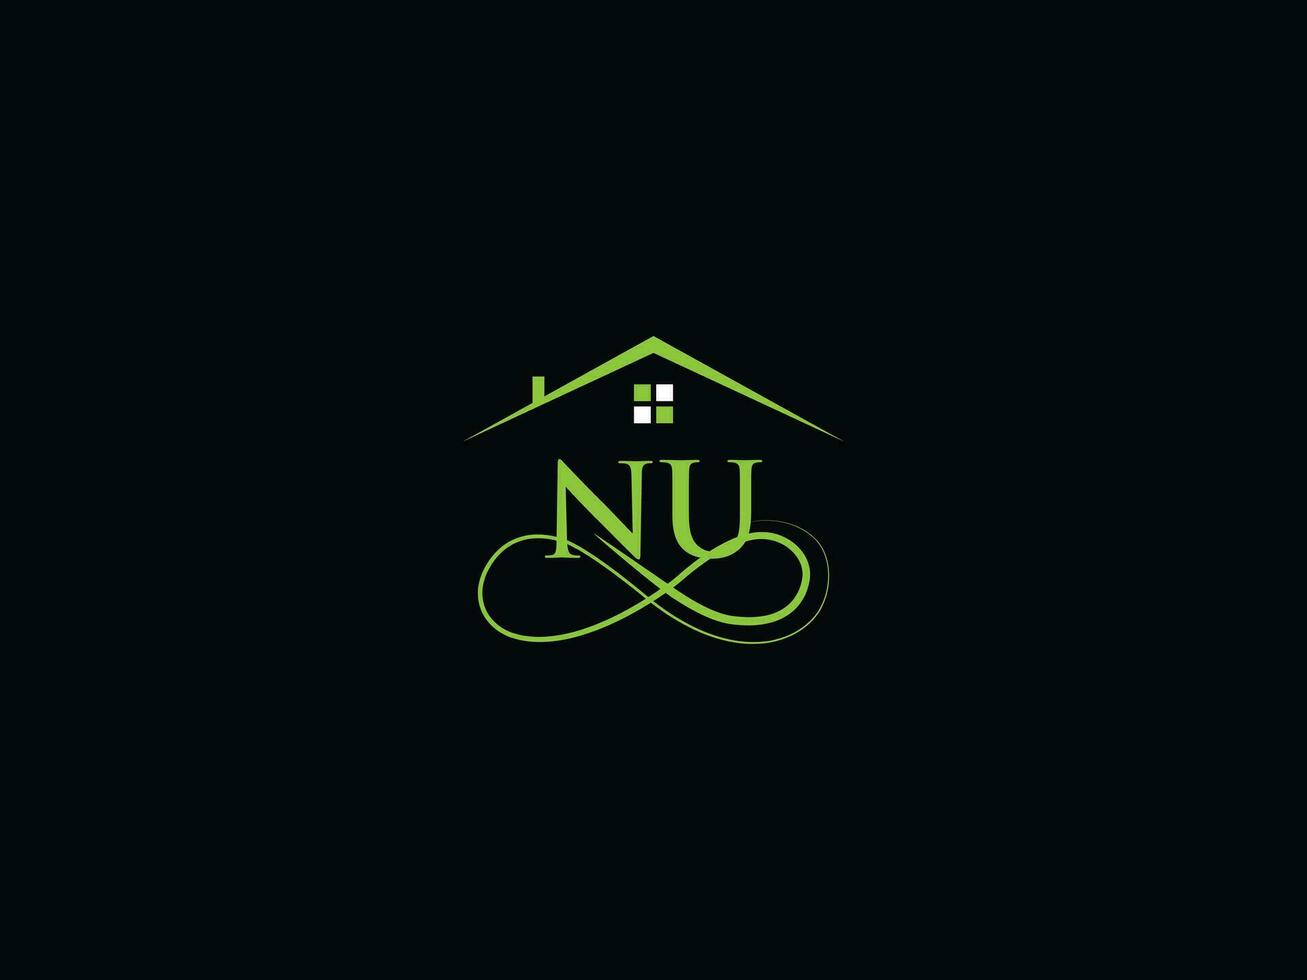 réel biens nu logo image, luxe nu moderne bâtiment lettre logo vecteur